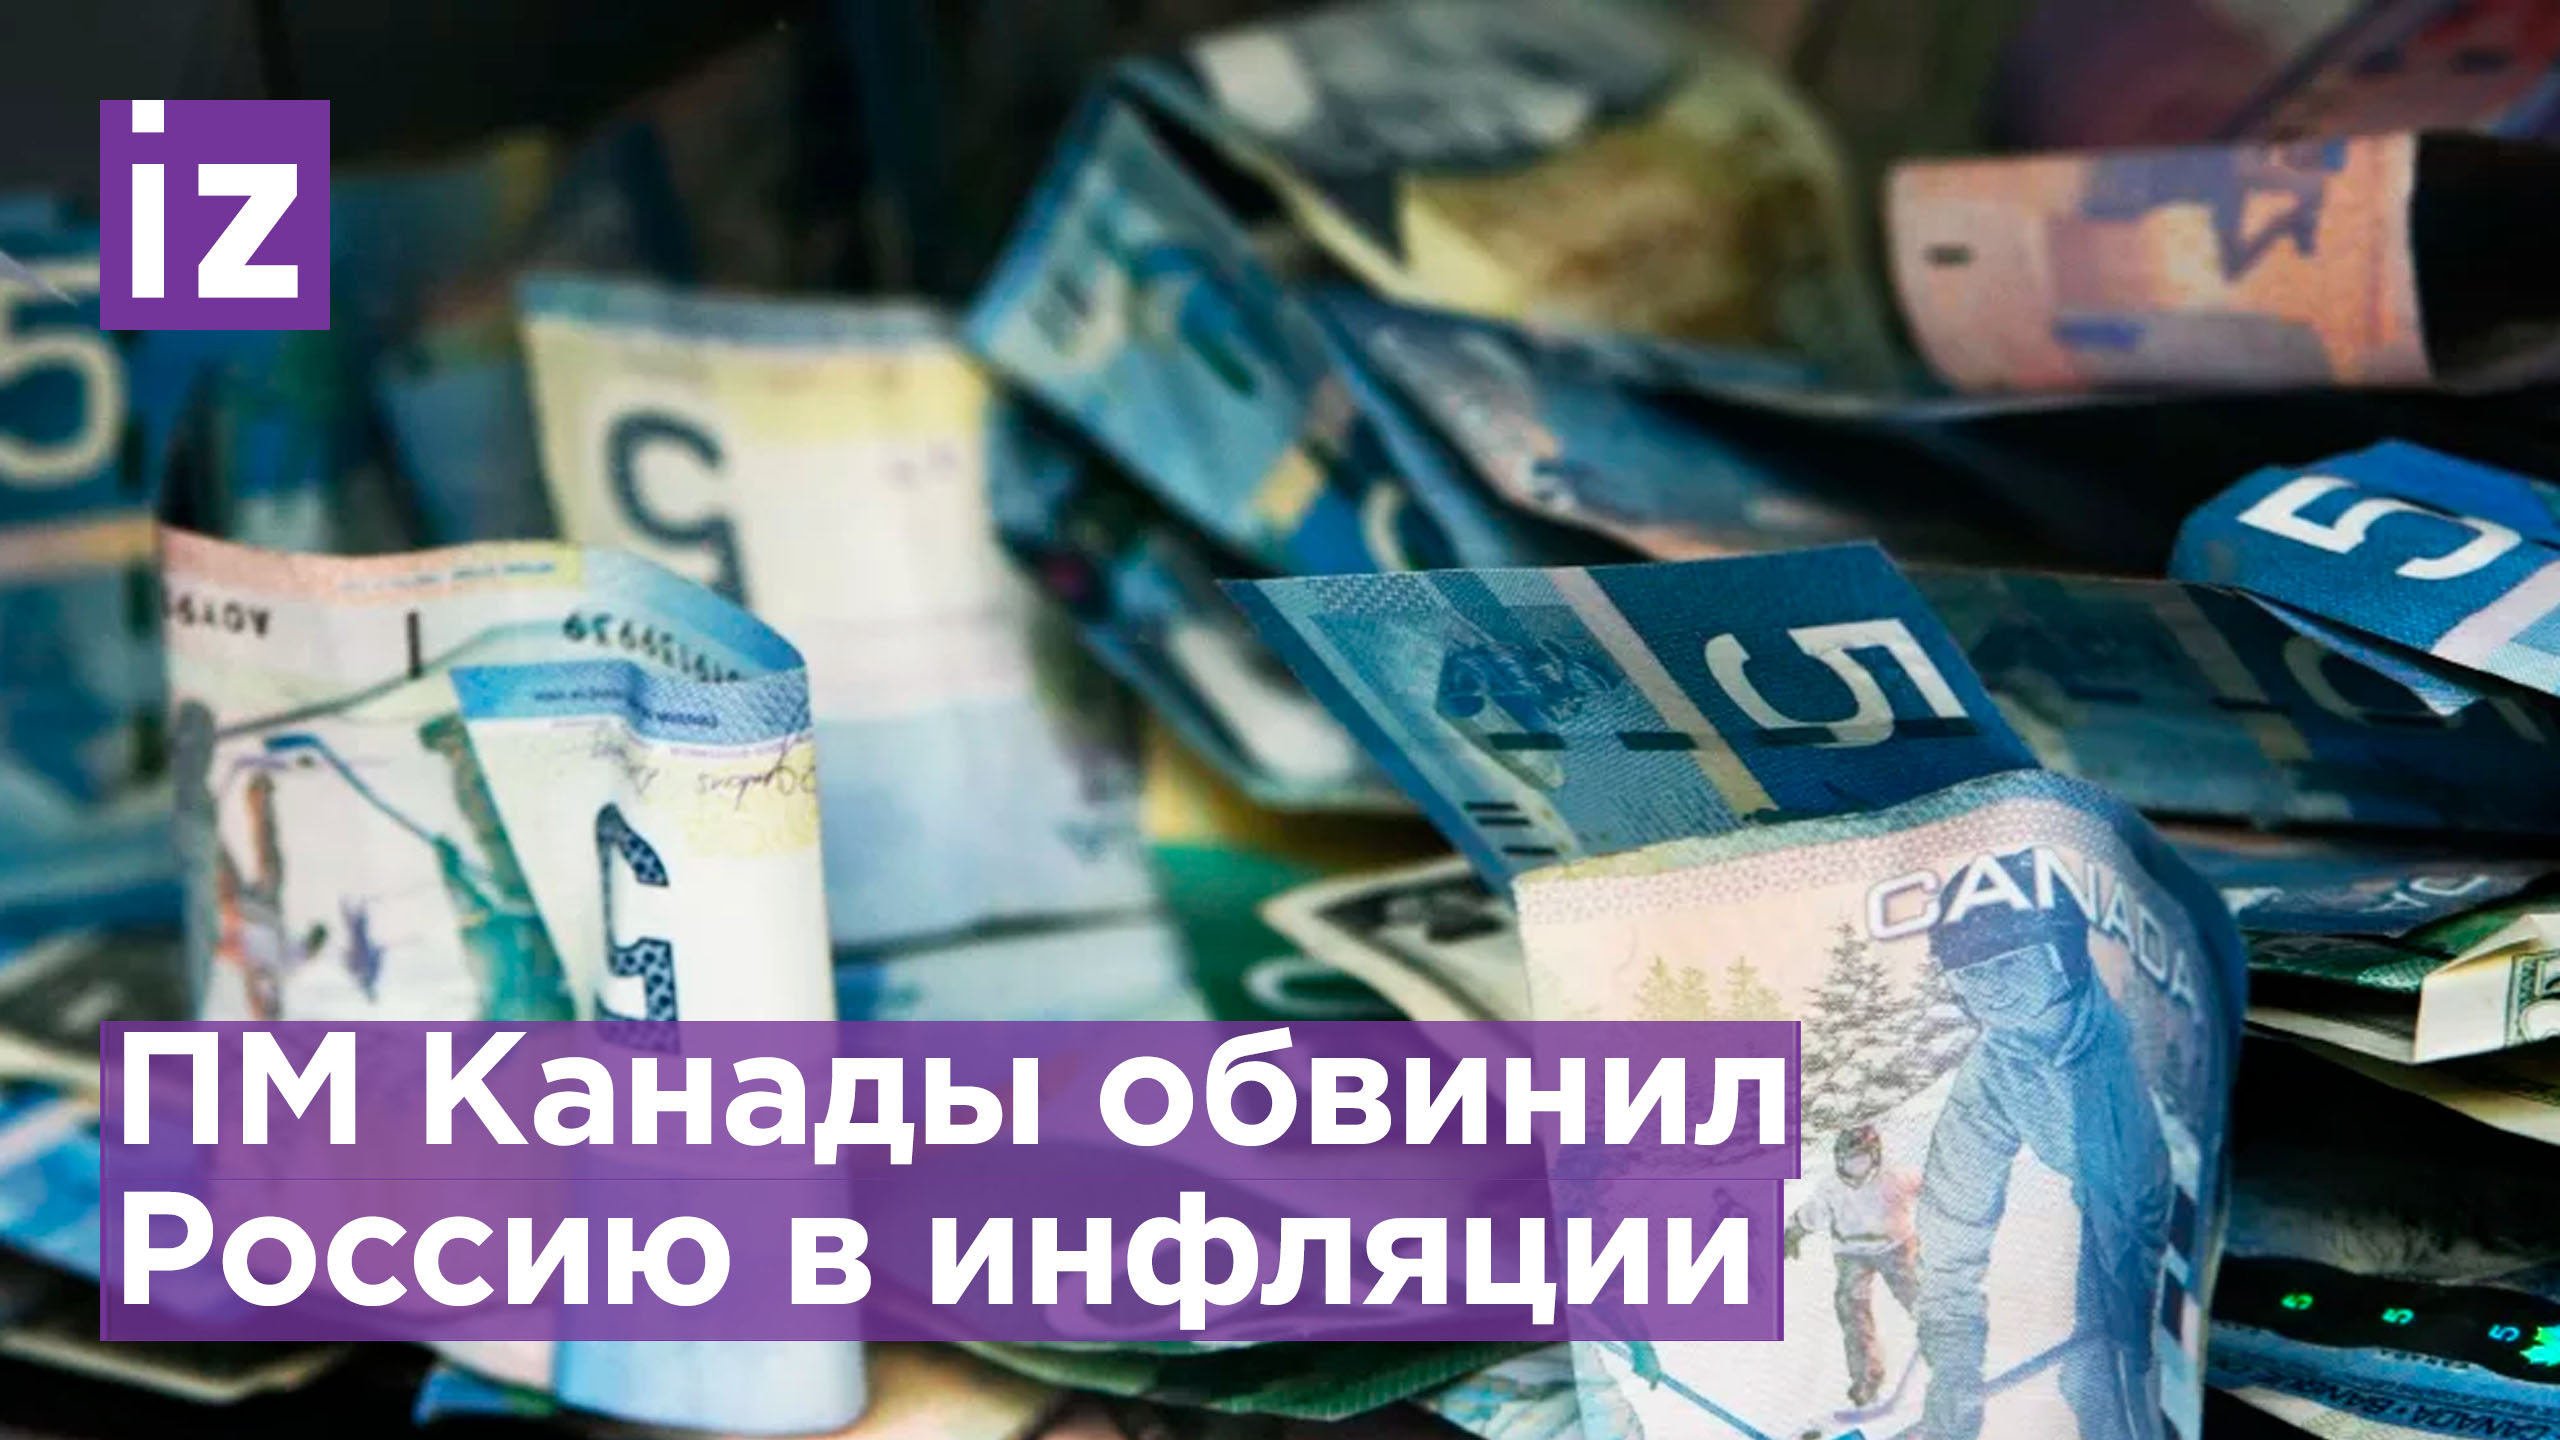 Трюдо обвинил Россию в инфляции в Канаде / Известия